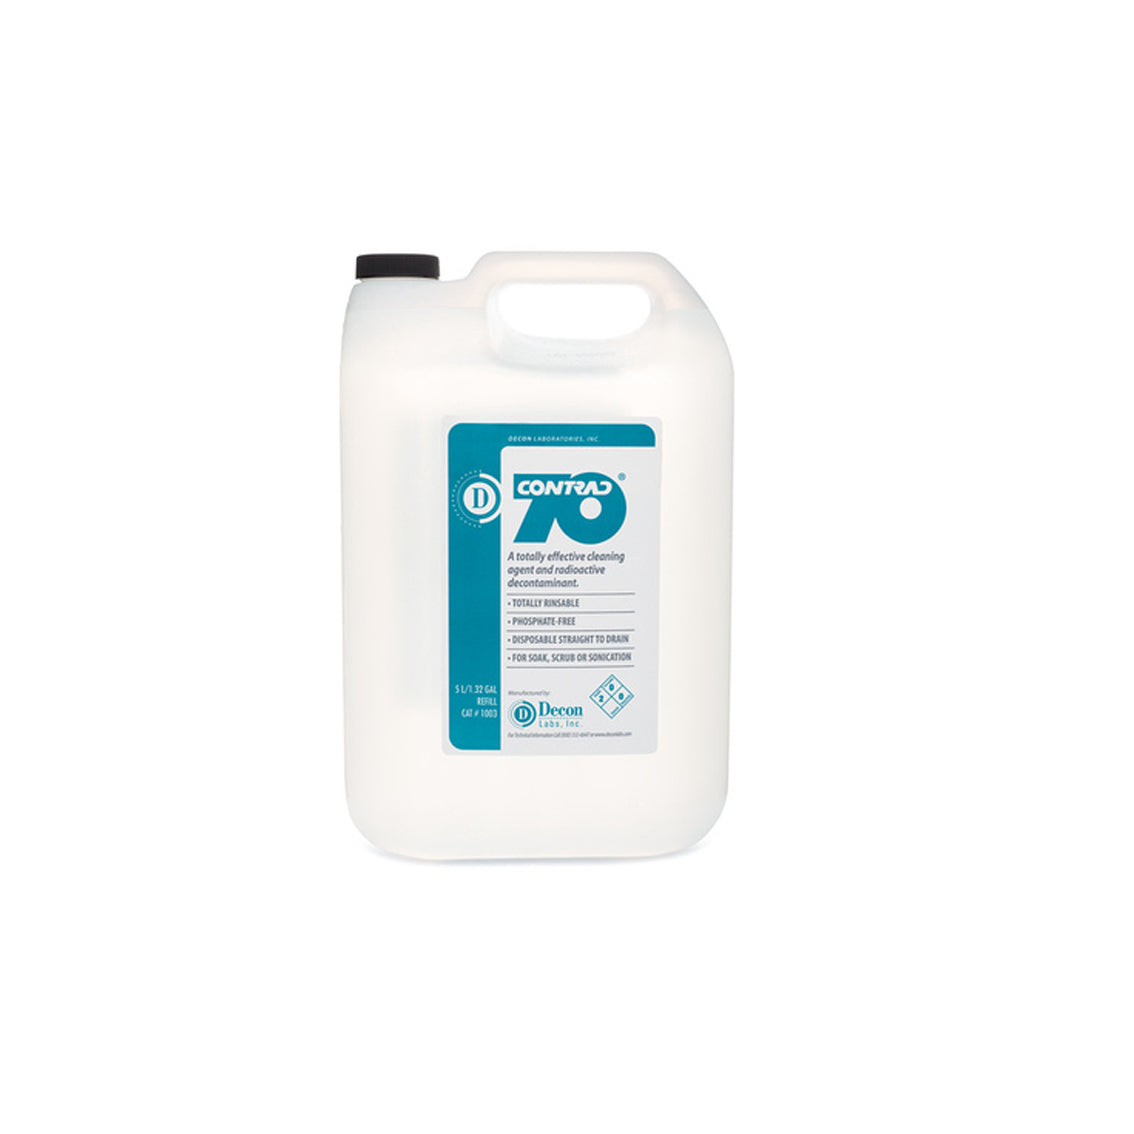 Detergent, Conc Contrad 70 Cleaner 1L (12/Cs), Sold As 12/Case Decon 1002